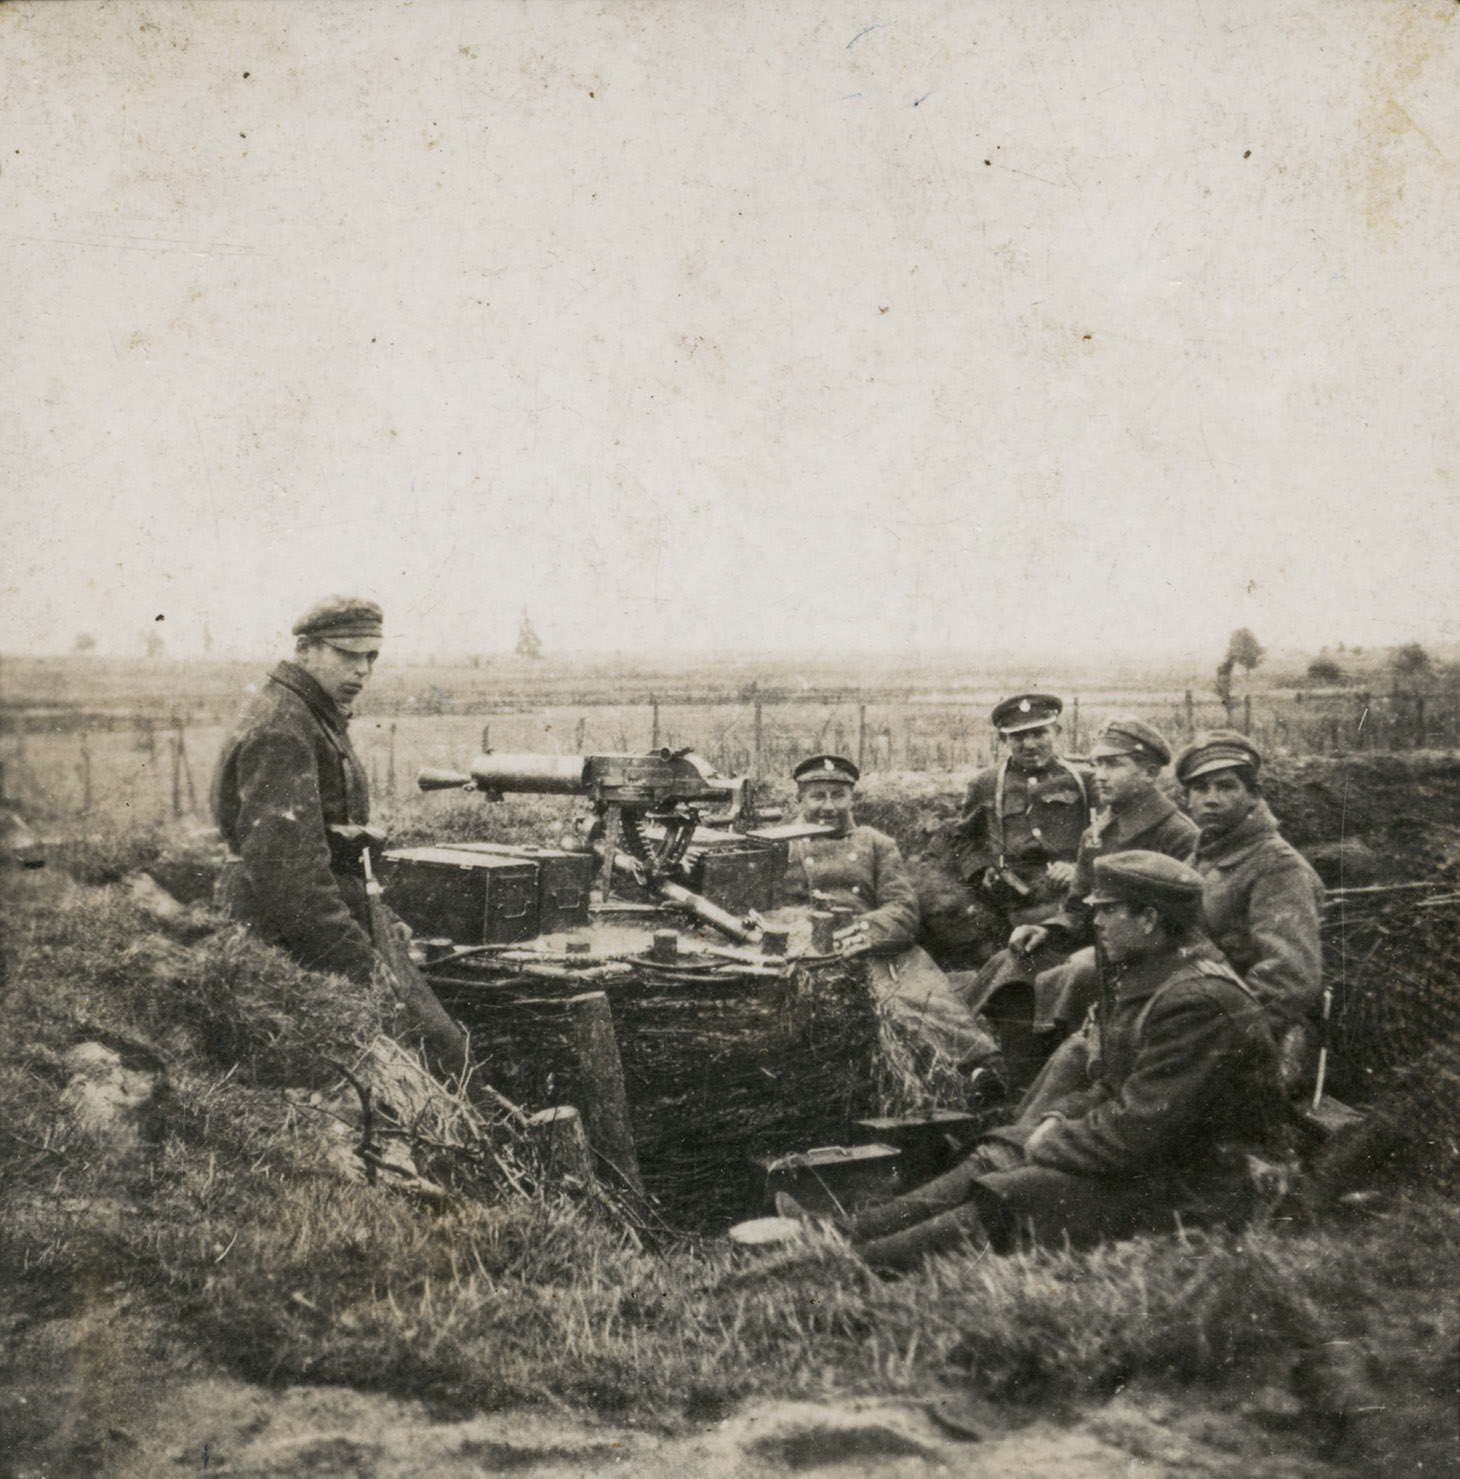 Czarno-biała fotografia przedstawiająca sześciu, pozującymi żołnierzy w okopie, przy stanowisku z karabinem. W dali lekko zaznaczony horyzont pól.  W centrum planu znajduje się karabin skierowany w stronę horyzontu i skrzynie z amunicją. Żołnierze siedzą w swobodnych pozach i opierając się plecami o wał okopu.